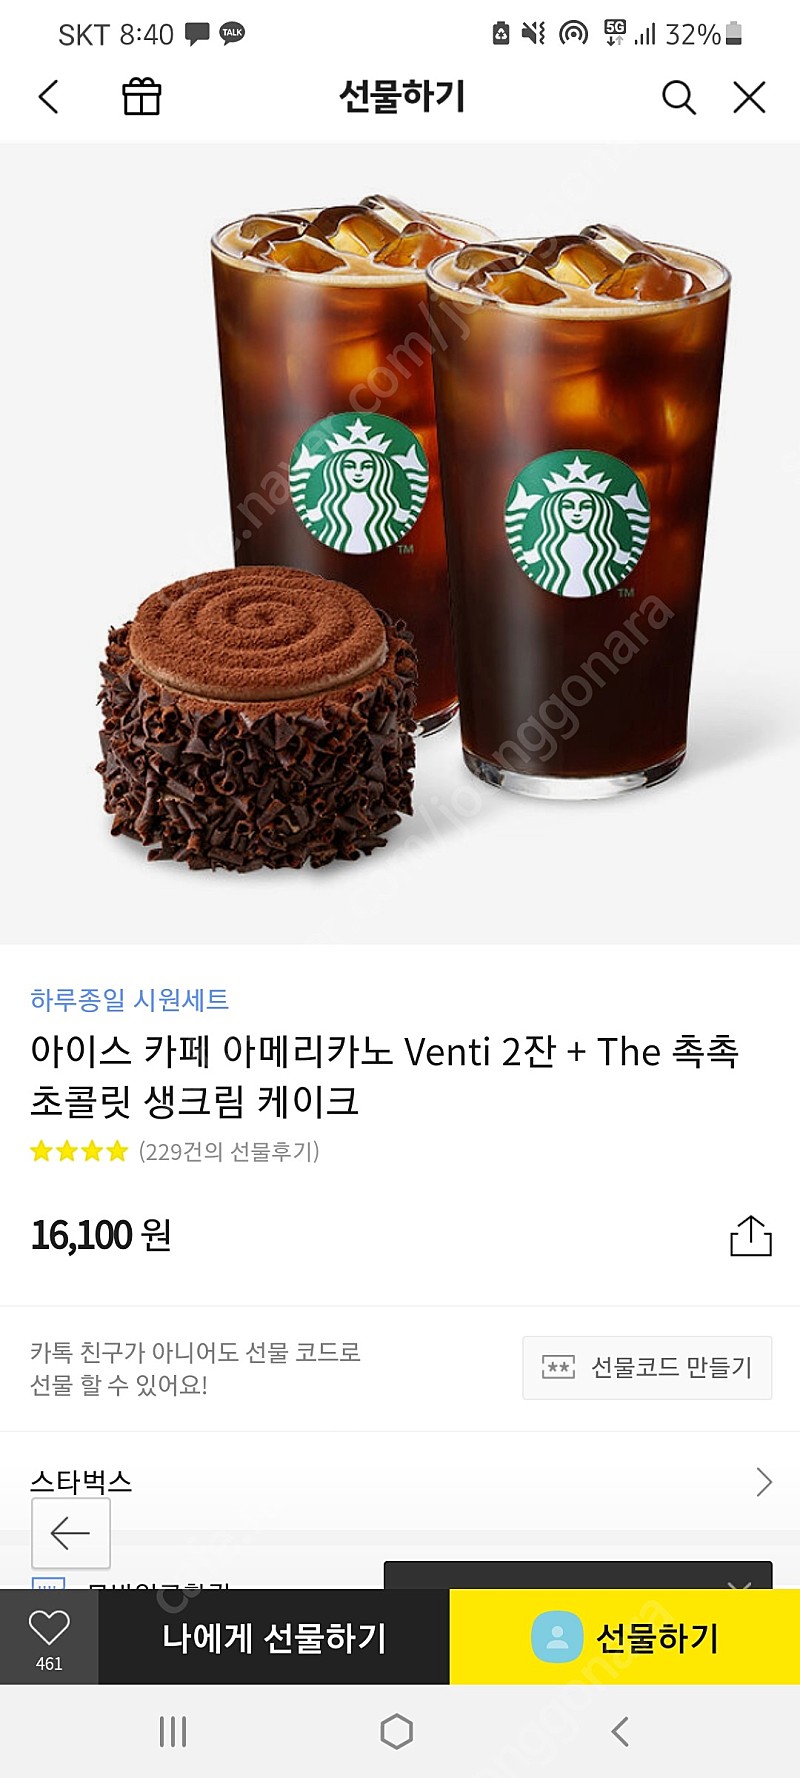 스타벅스 아이스 카페 아메리카노 Venti 2잔 + The 촉촉 초콜릿 생크림 케이크